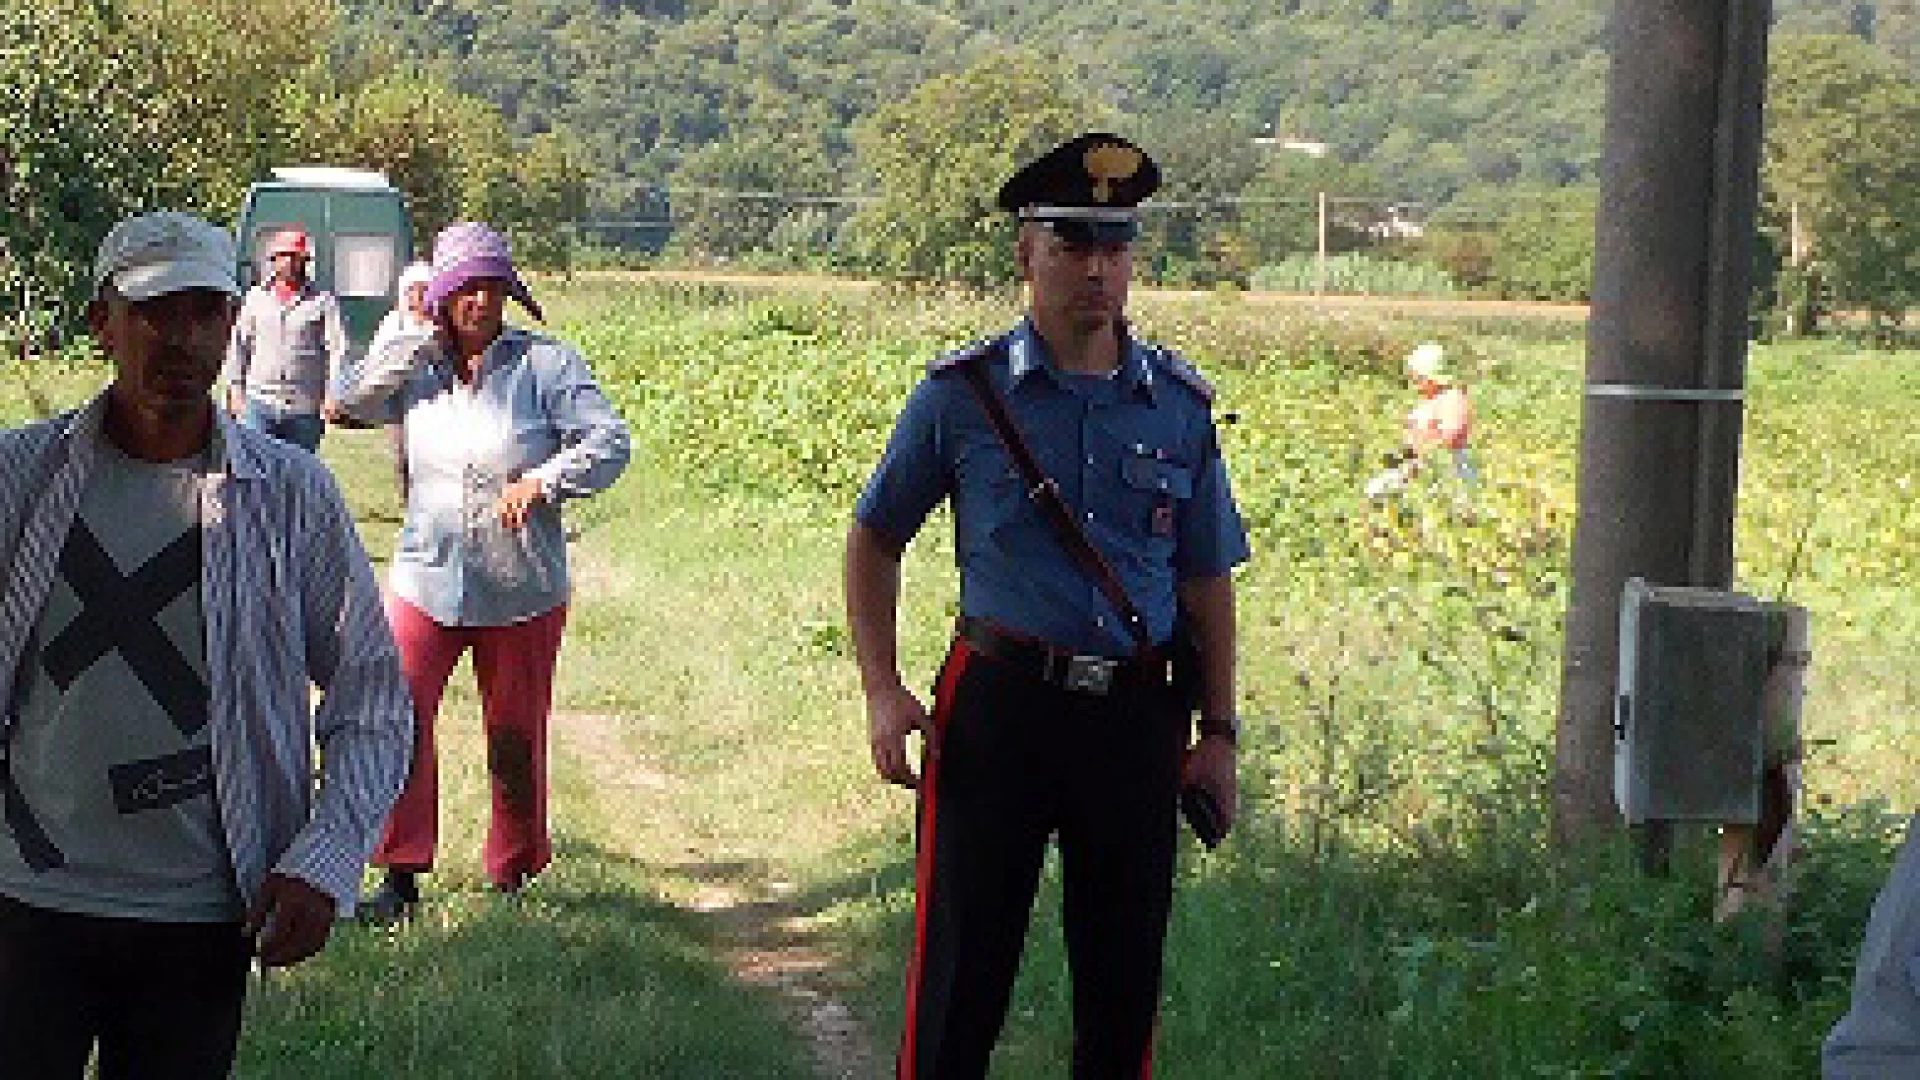 Sesto Campano: lotta al caporalato i Carabinieri controllano 18 persone addette alla raccolta di fagiolini. Tutti bulgari e regolarmente assunti.